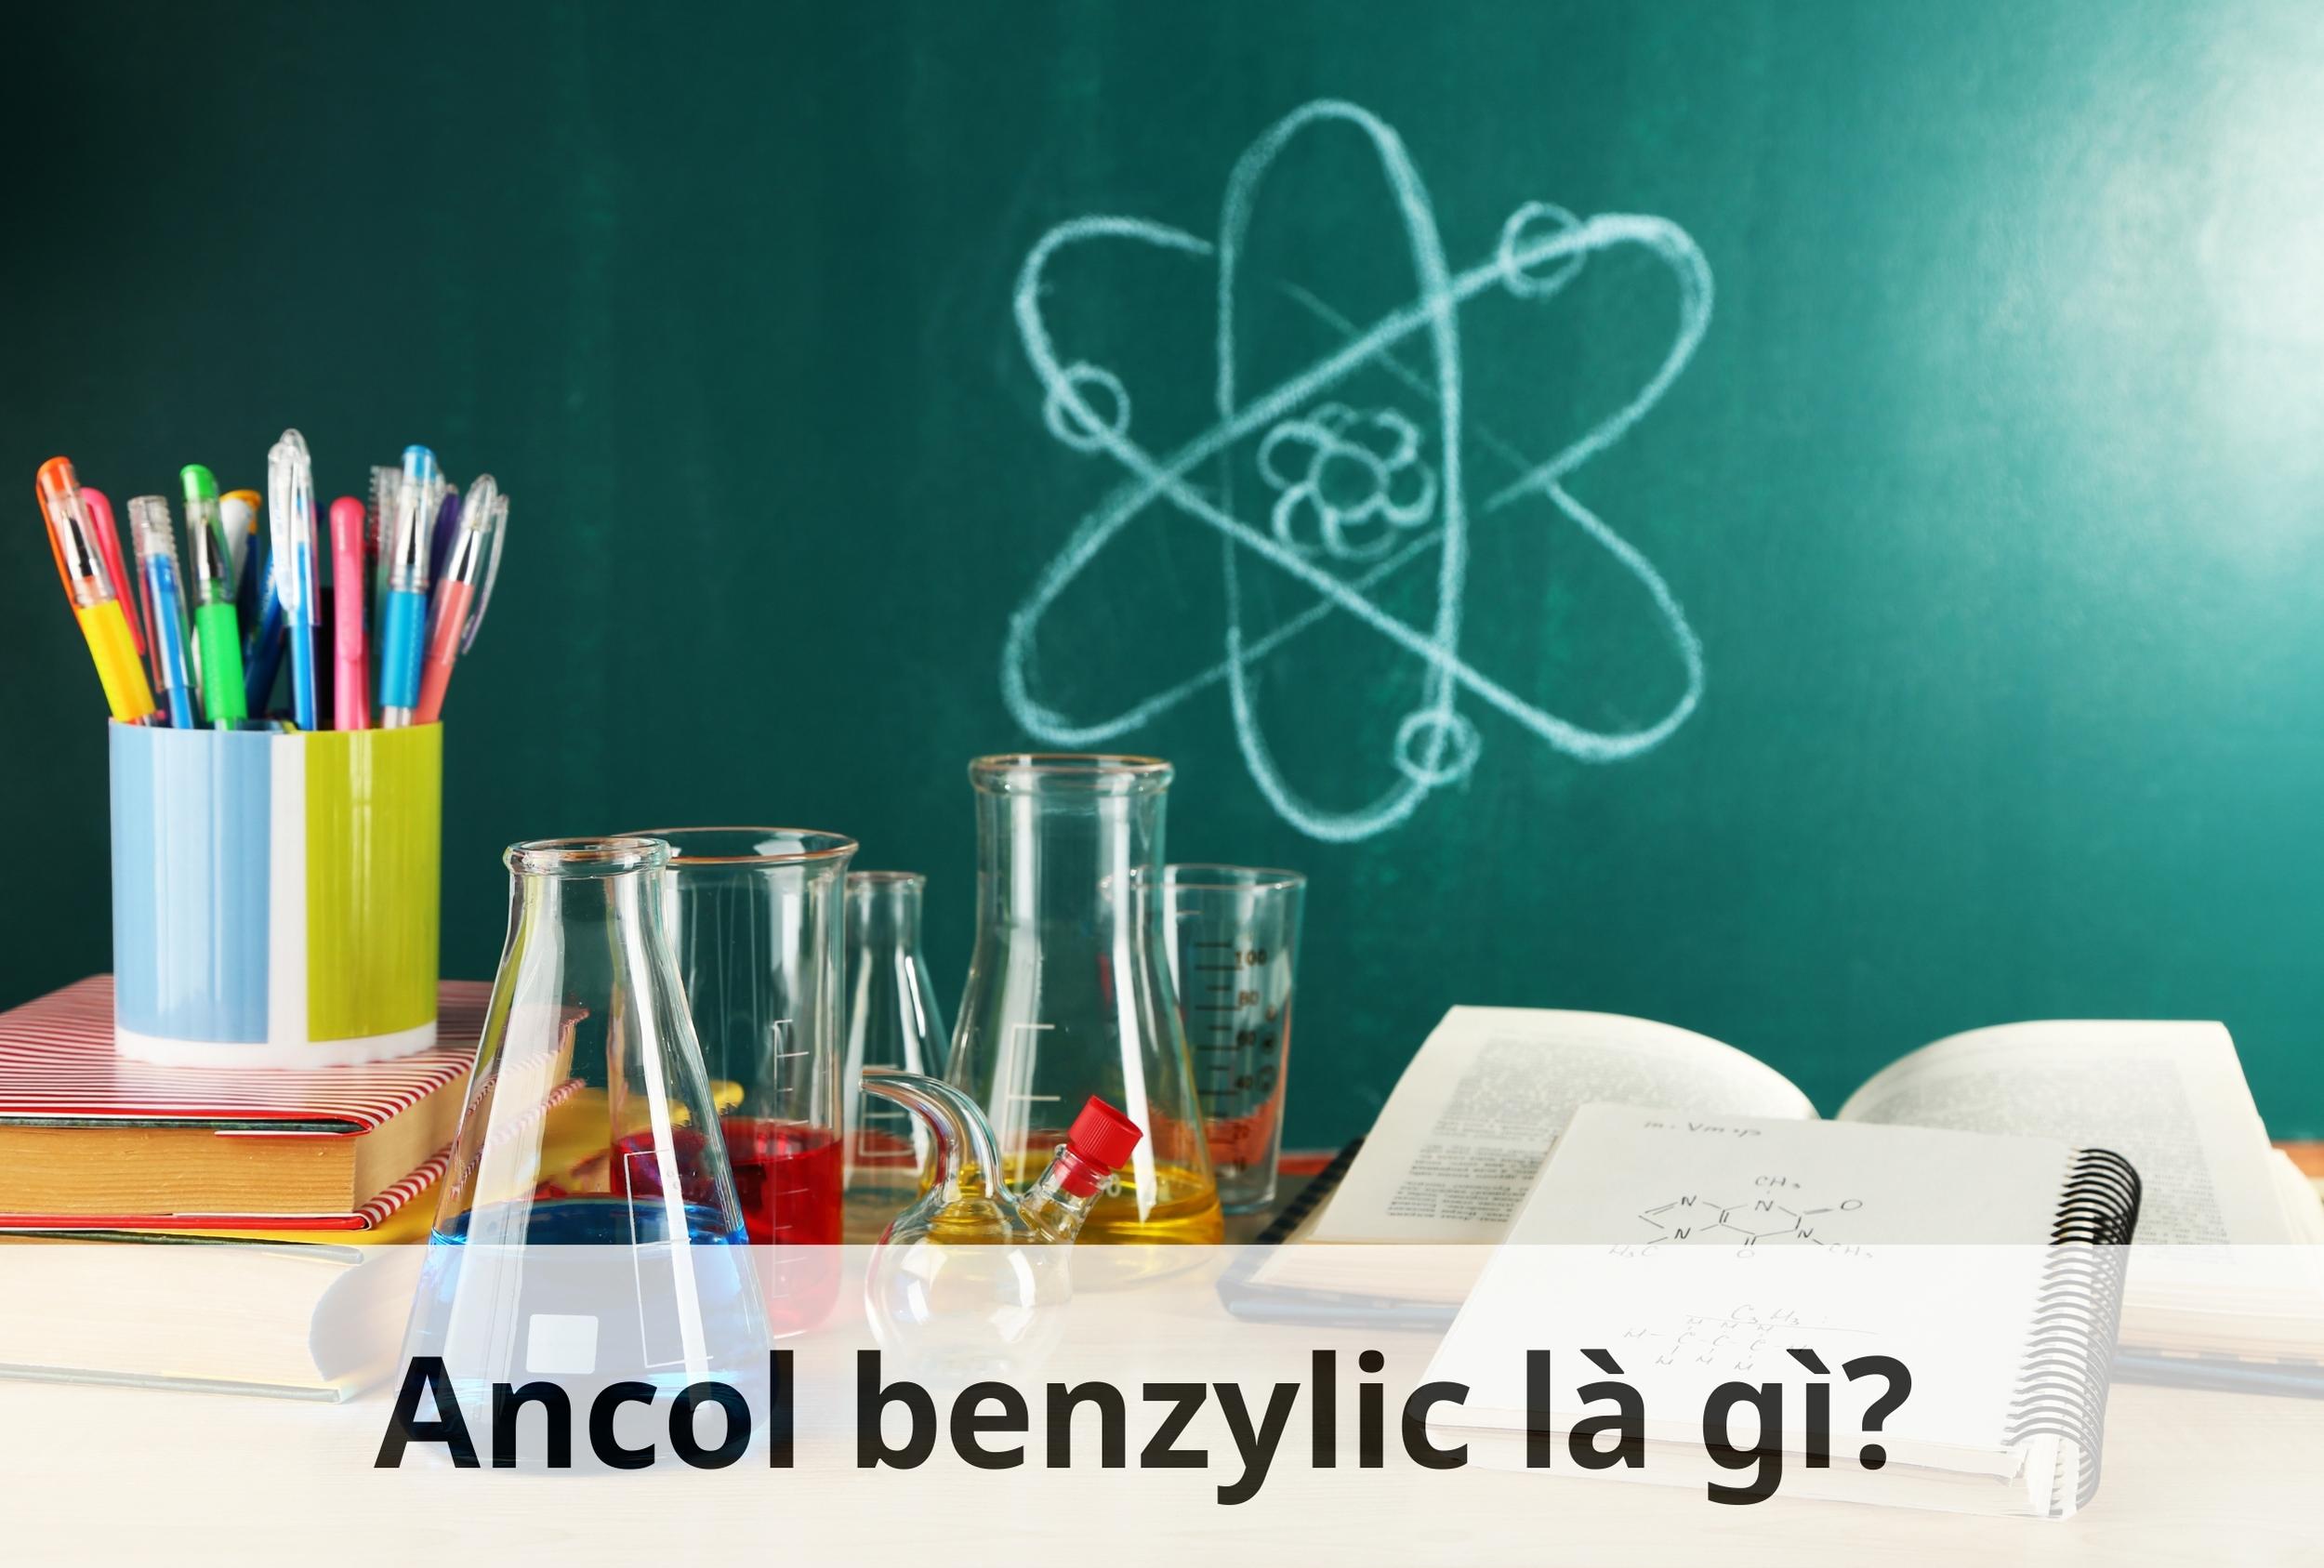 Khái niệm ancol benzylic là gì?